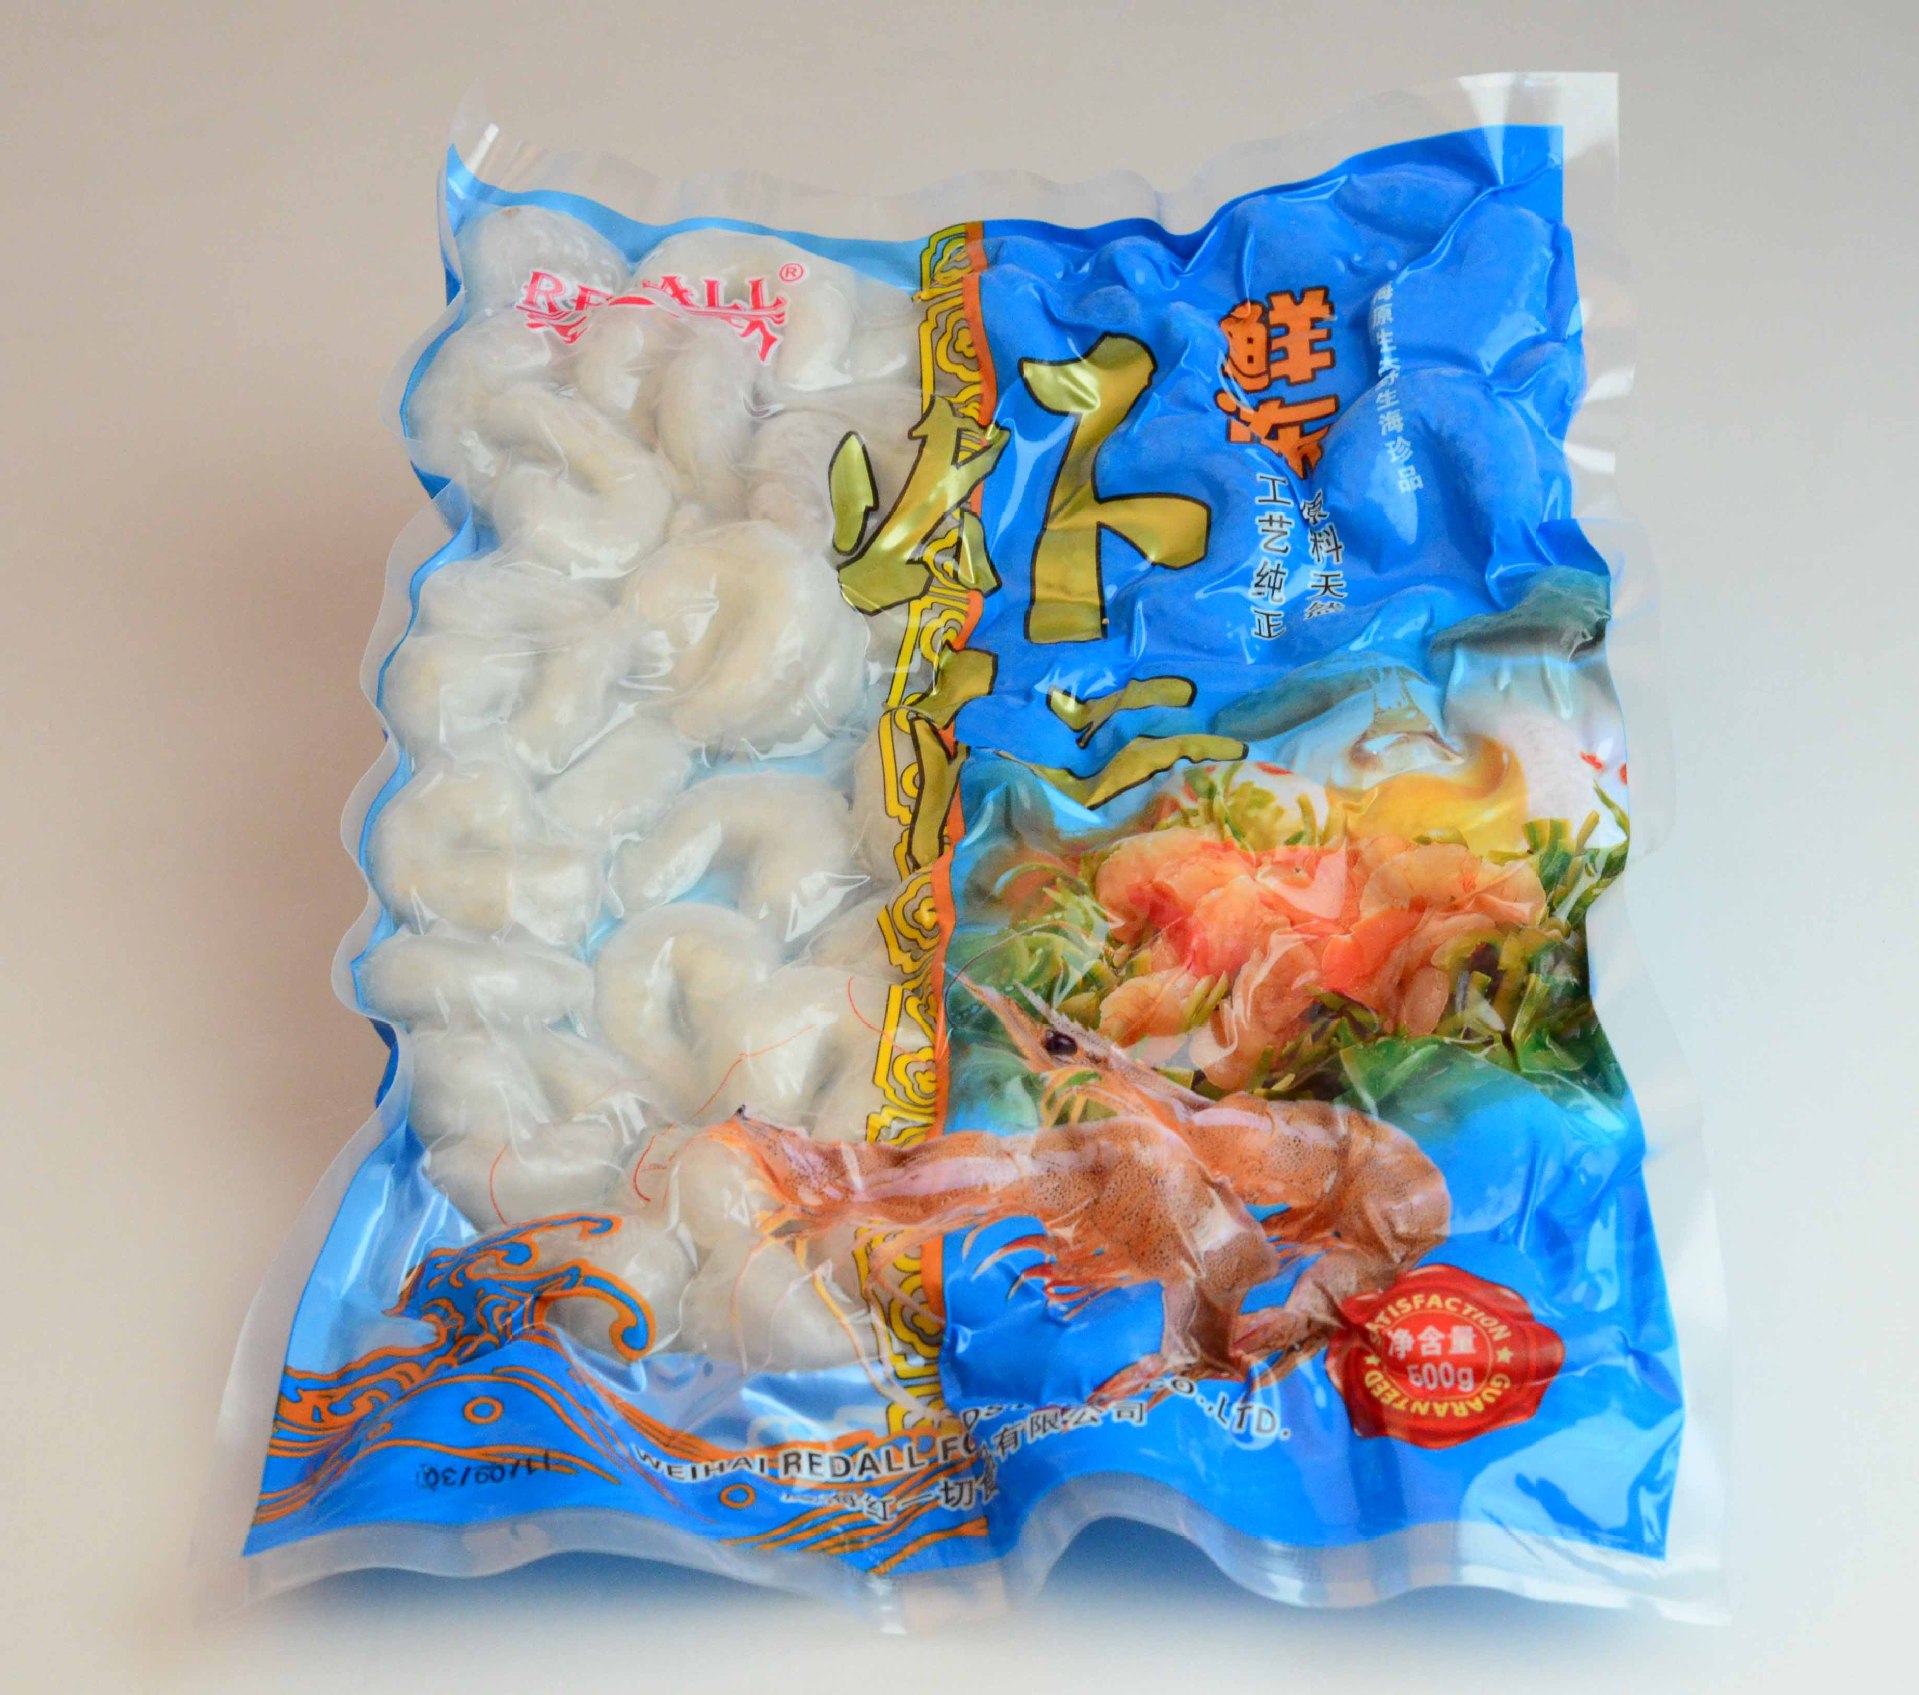 海鲜 冷冻水产 海鲜礼盒 包装盒 水产食品 水产品虾 海鲜零食